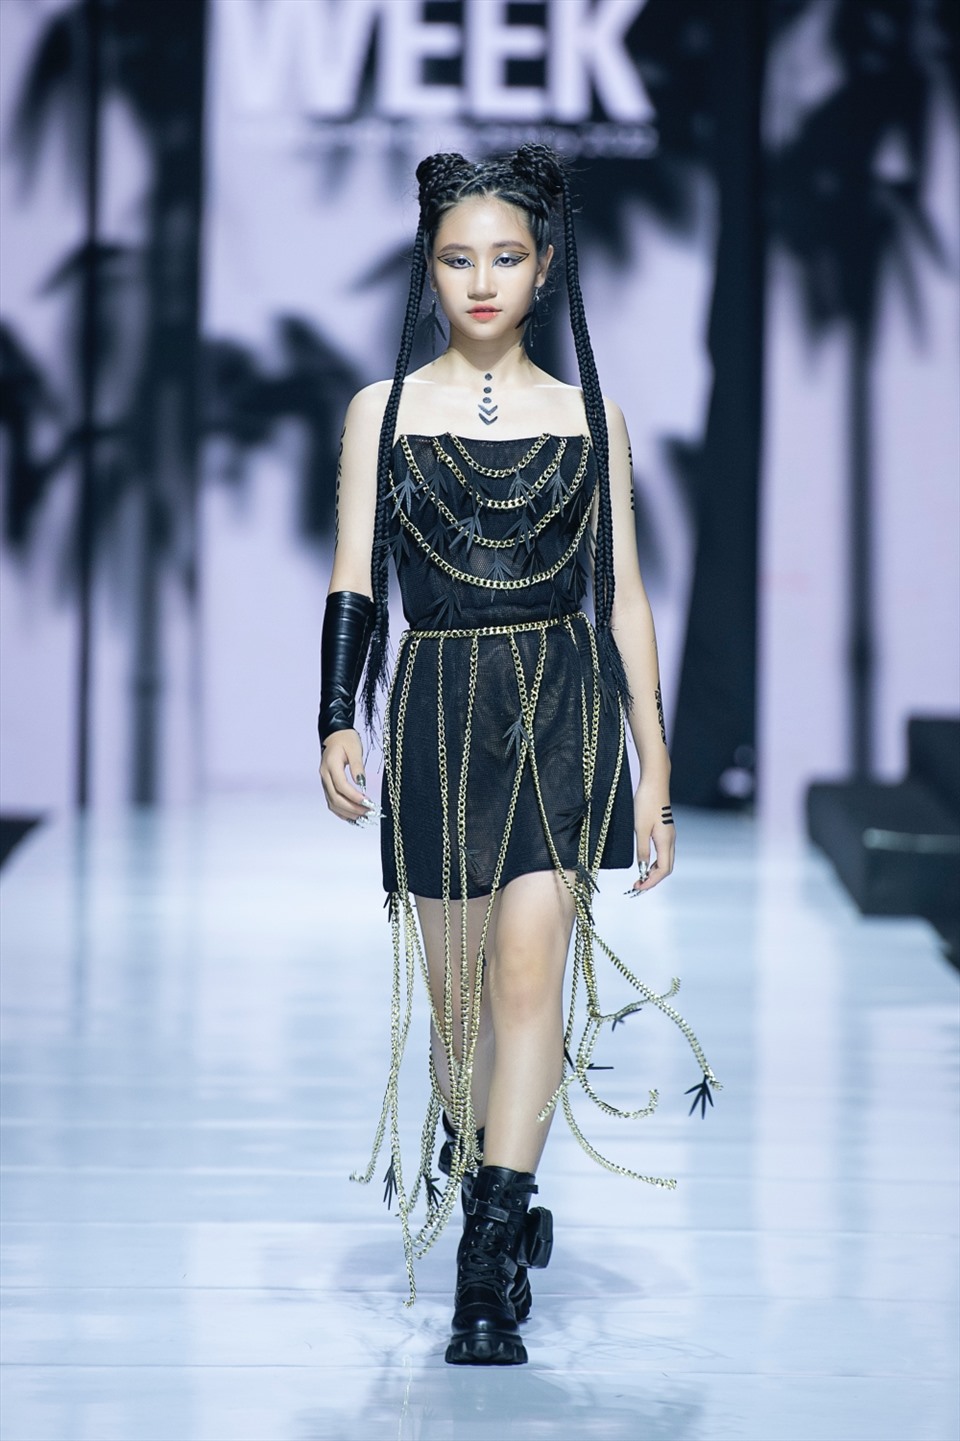 Đặng Minh Anh là một trong những gương mặt mẫu quen thuộc của làng thời trang Việt khi từng “chinh chiến” nhiều sàn runway lớn nhỏ trong nước và ngoài nước như: Malaysia Fashion Week 2018, Tuần lễ thời trang trẻ em quốc tế Việt Nam 2019, Tuần lễ thời trang quốc tế Việt Nam Xuân Hè 2022… Ảnh: NVCC.